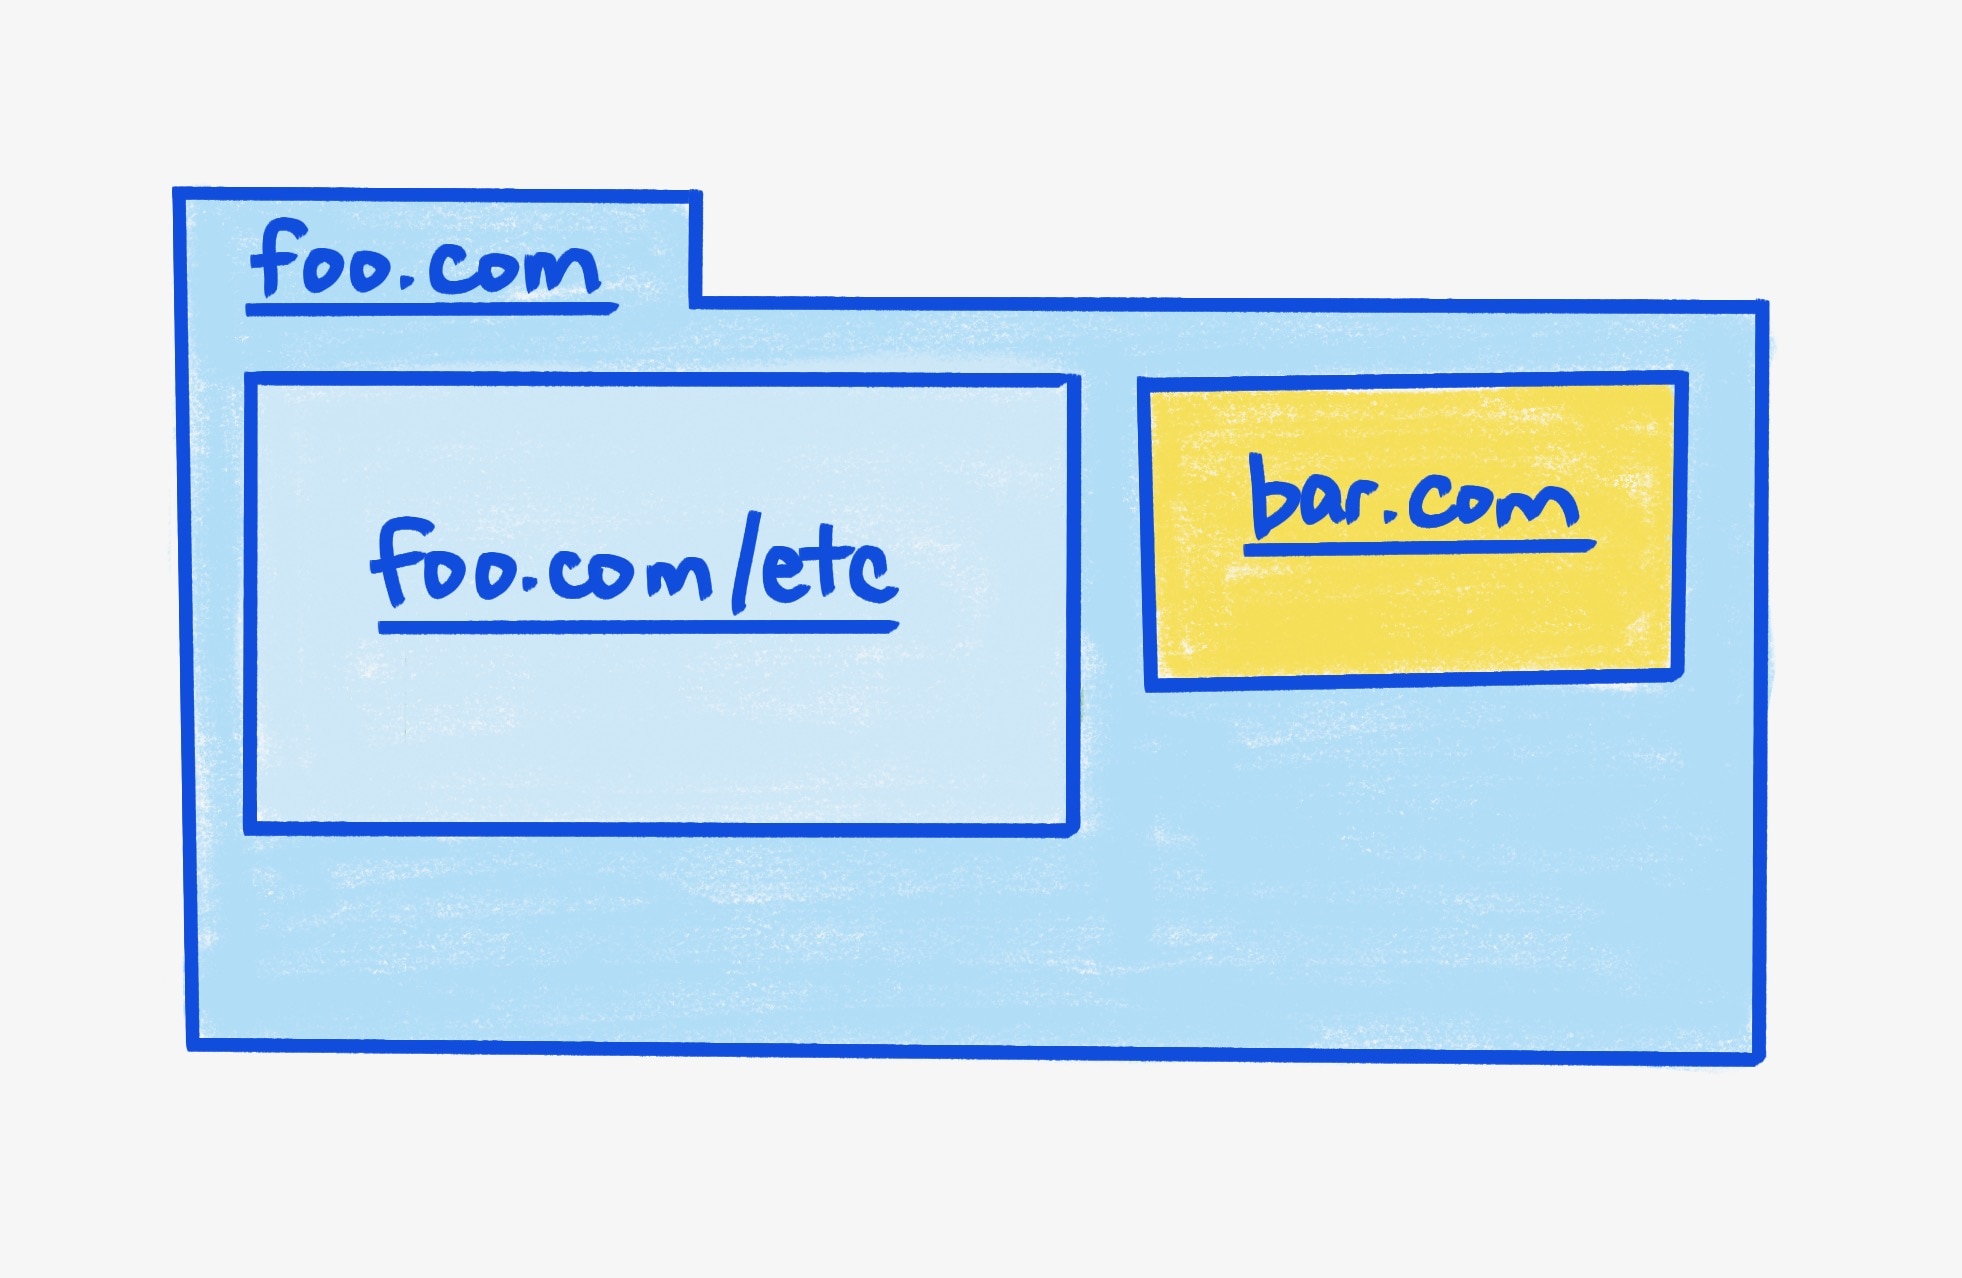 מסגרת הורה foo.com, שמכילה שני iframes.